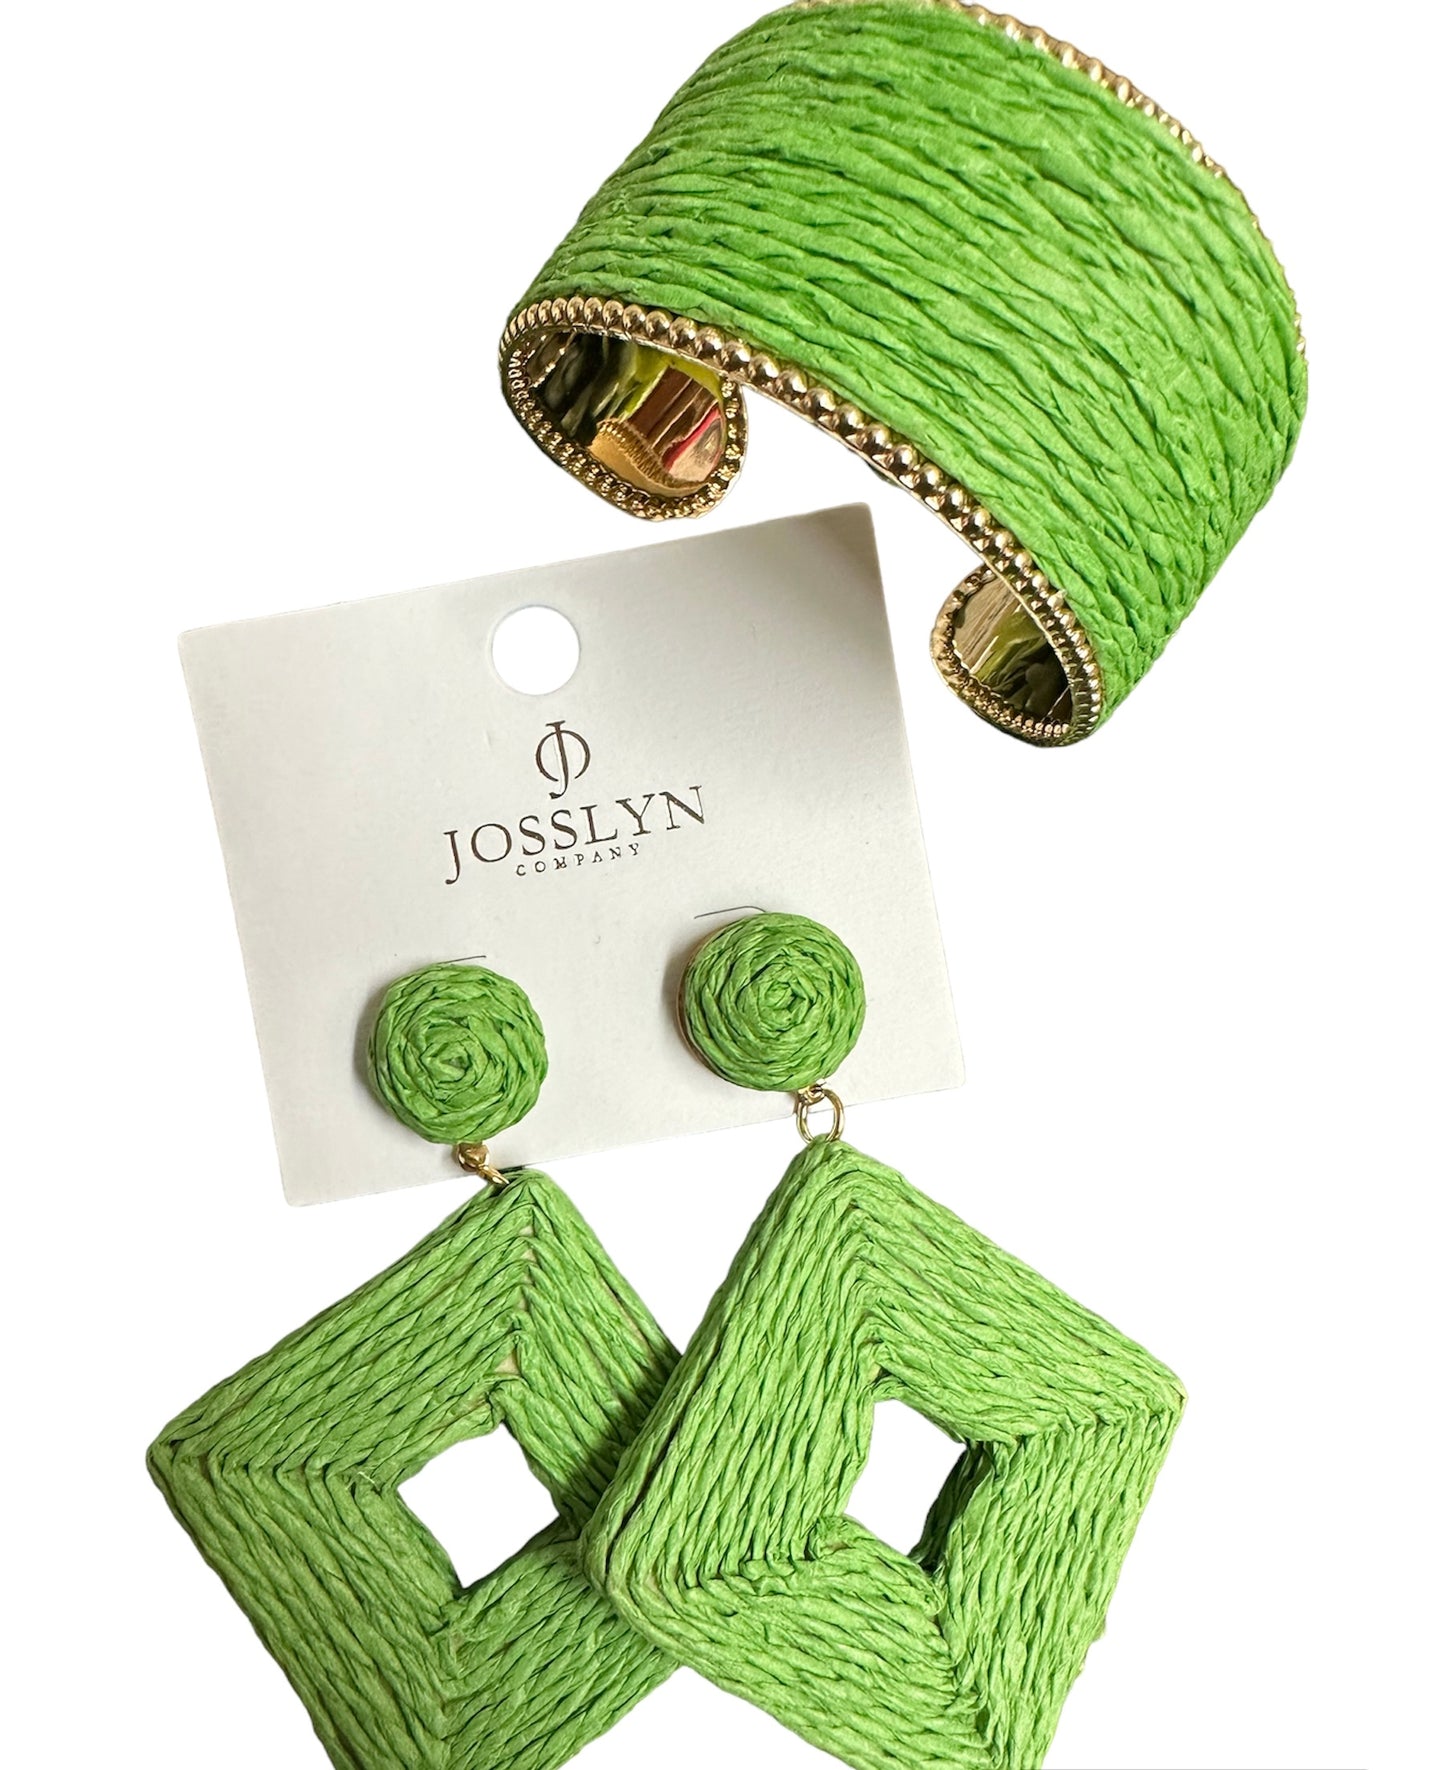 The Josslyn Earring & Bracelet Set